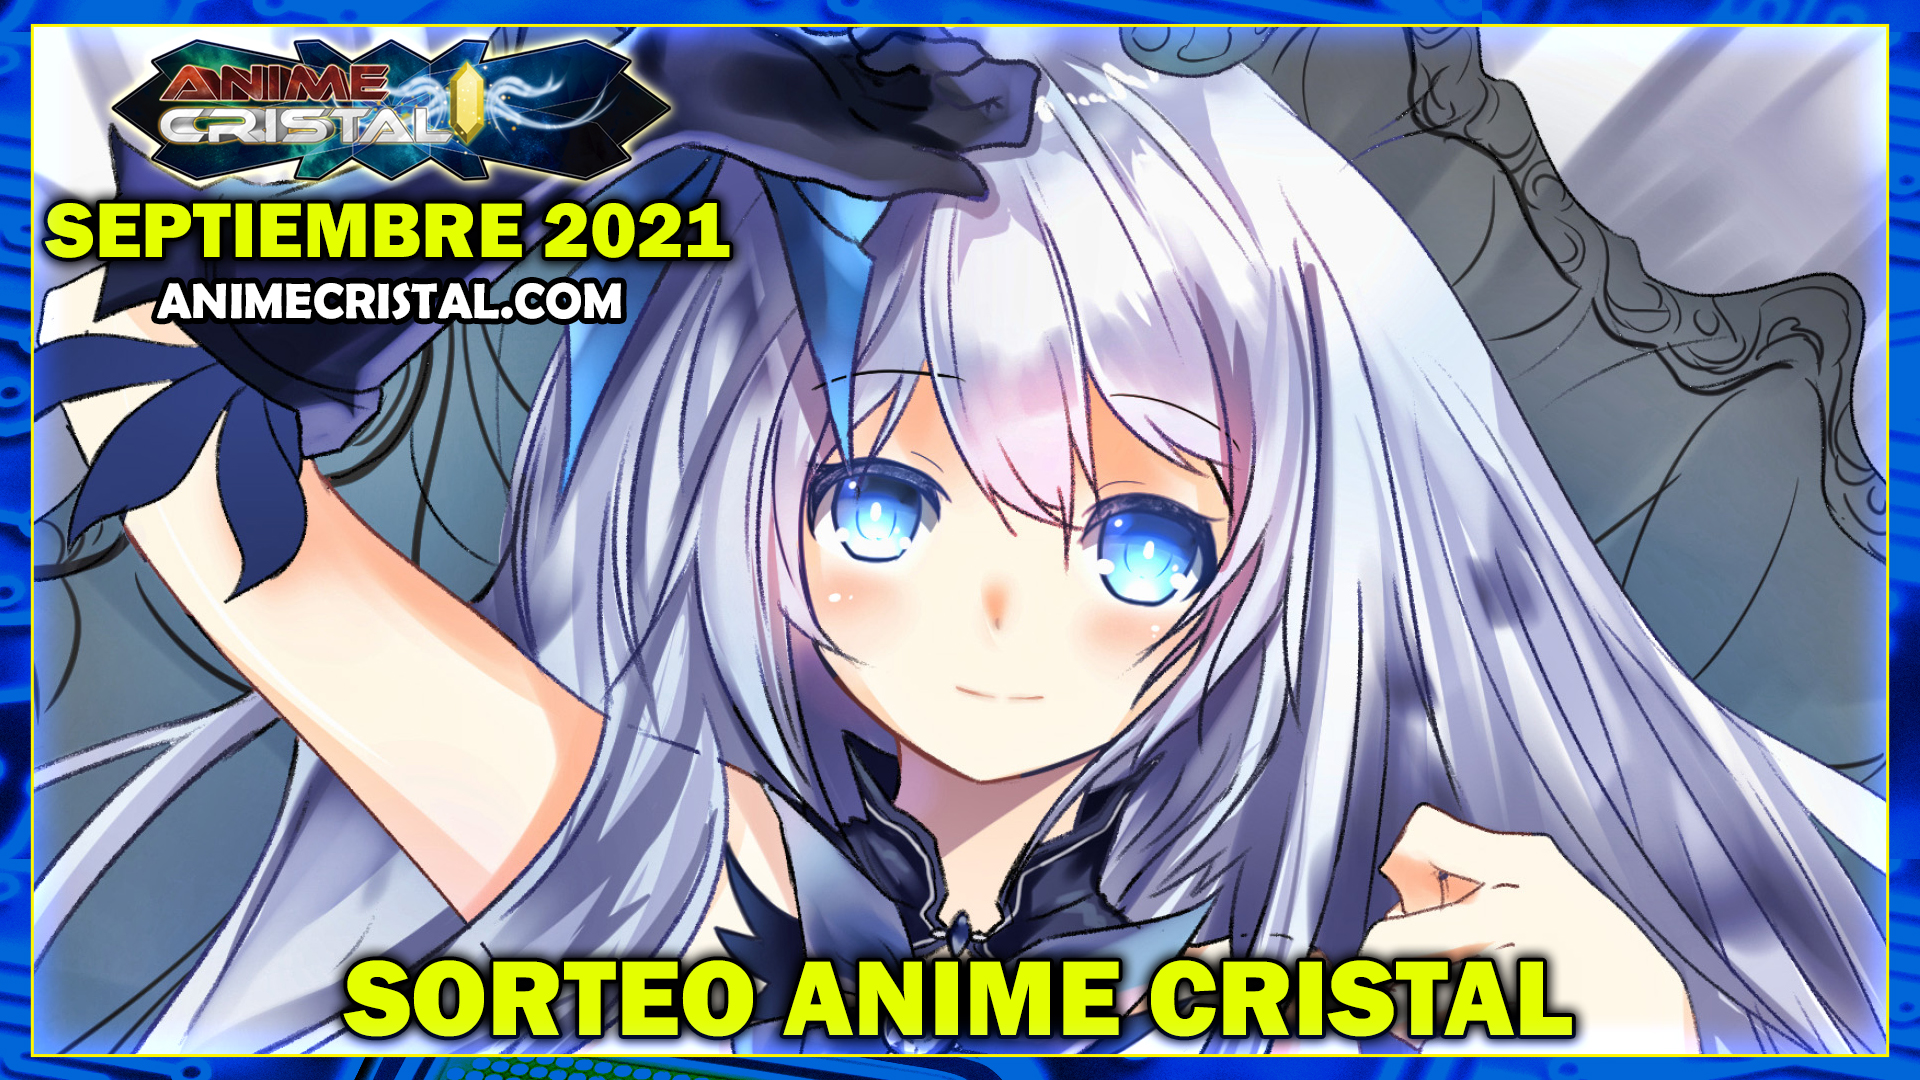 Sorteo Anime Cristal Septiembre 2021